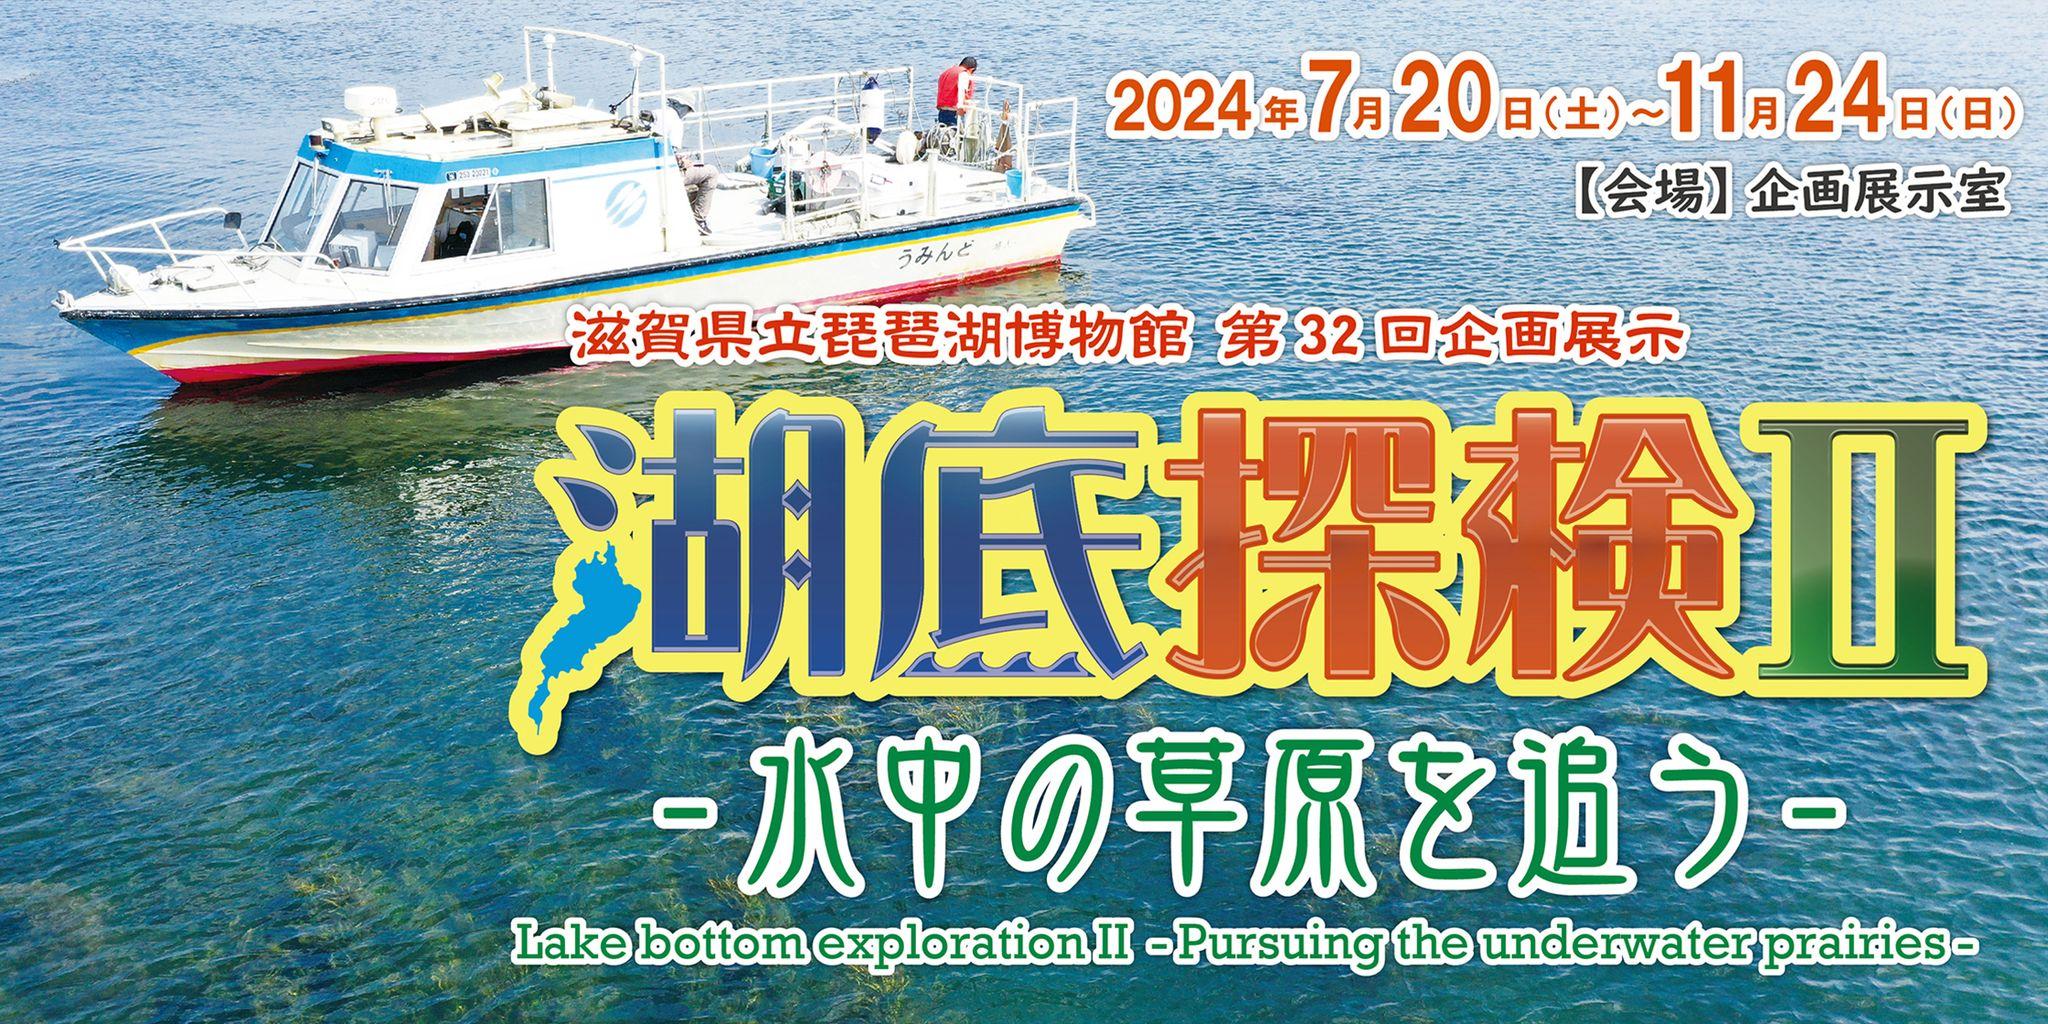 「琵琶湖の水草」の企画展示を開催します